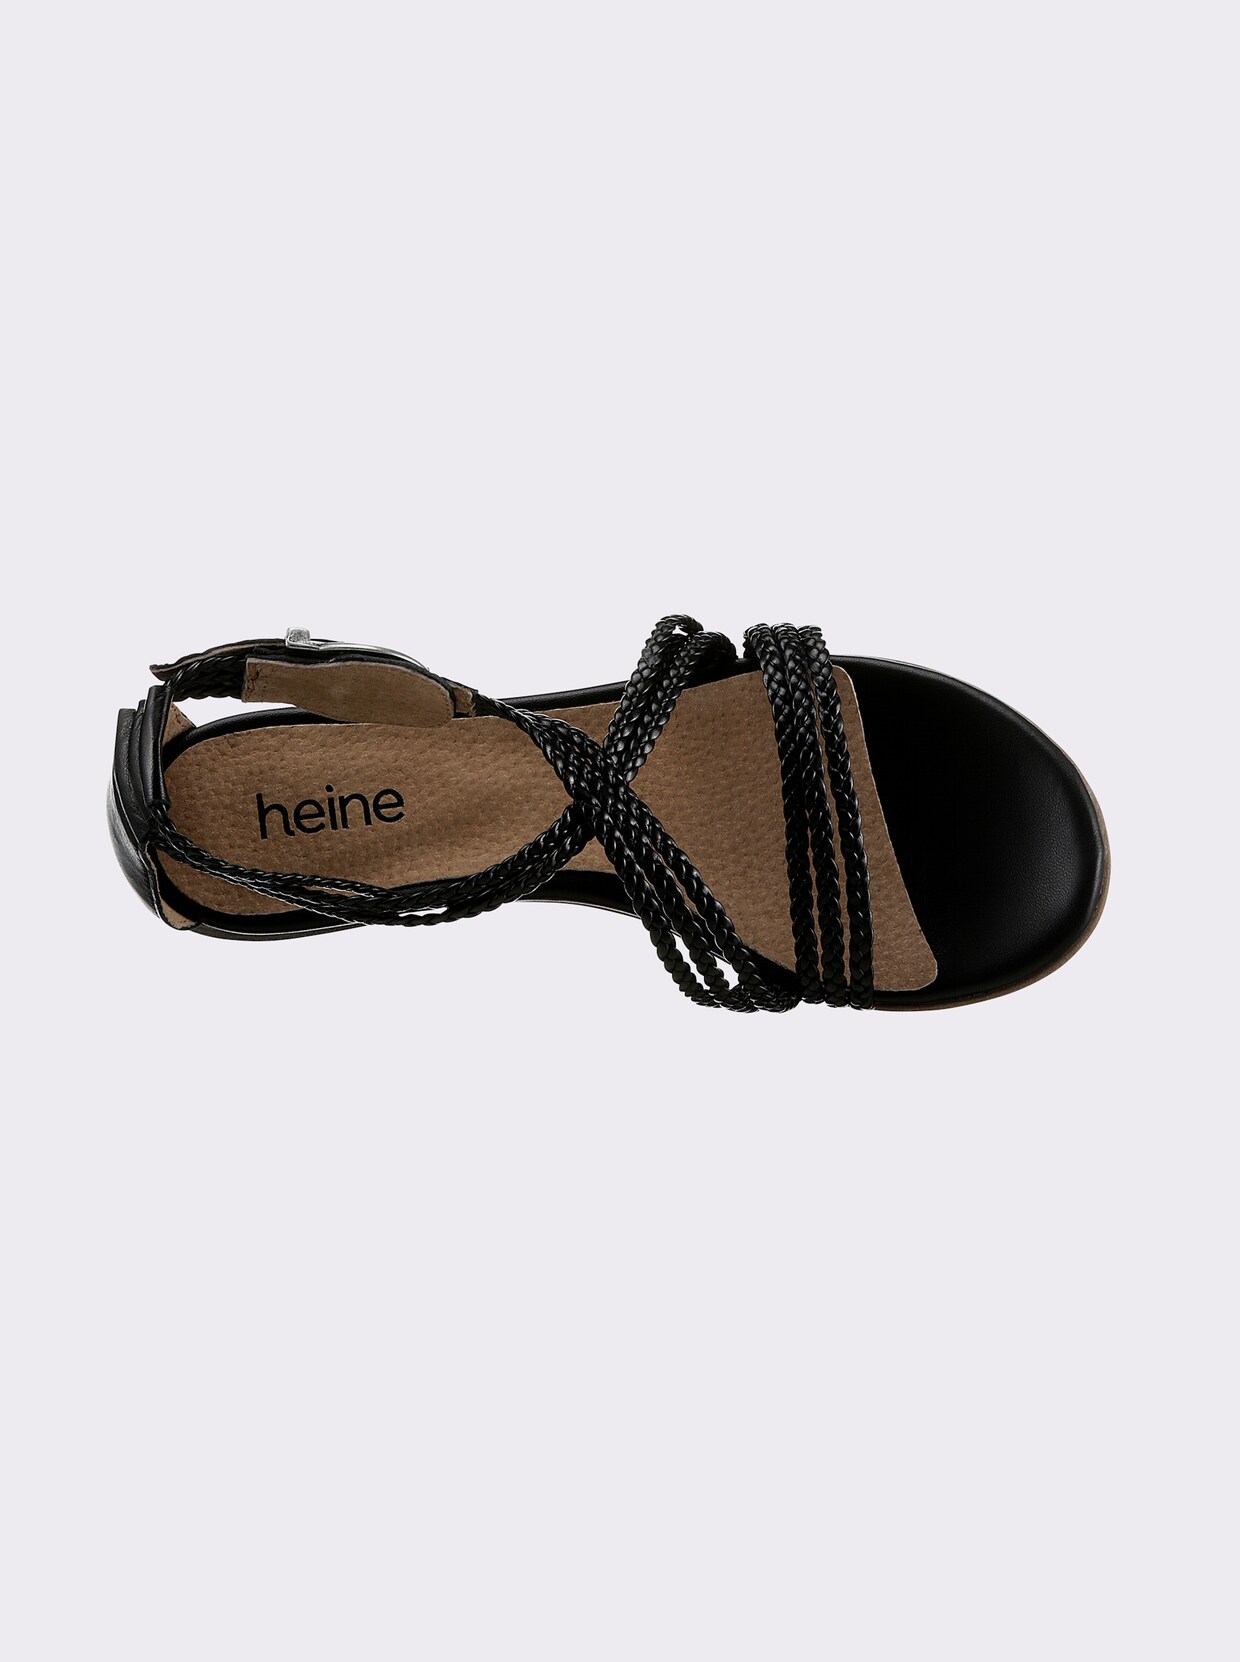 heine Sandale - schwarz